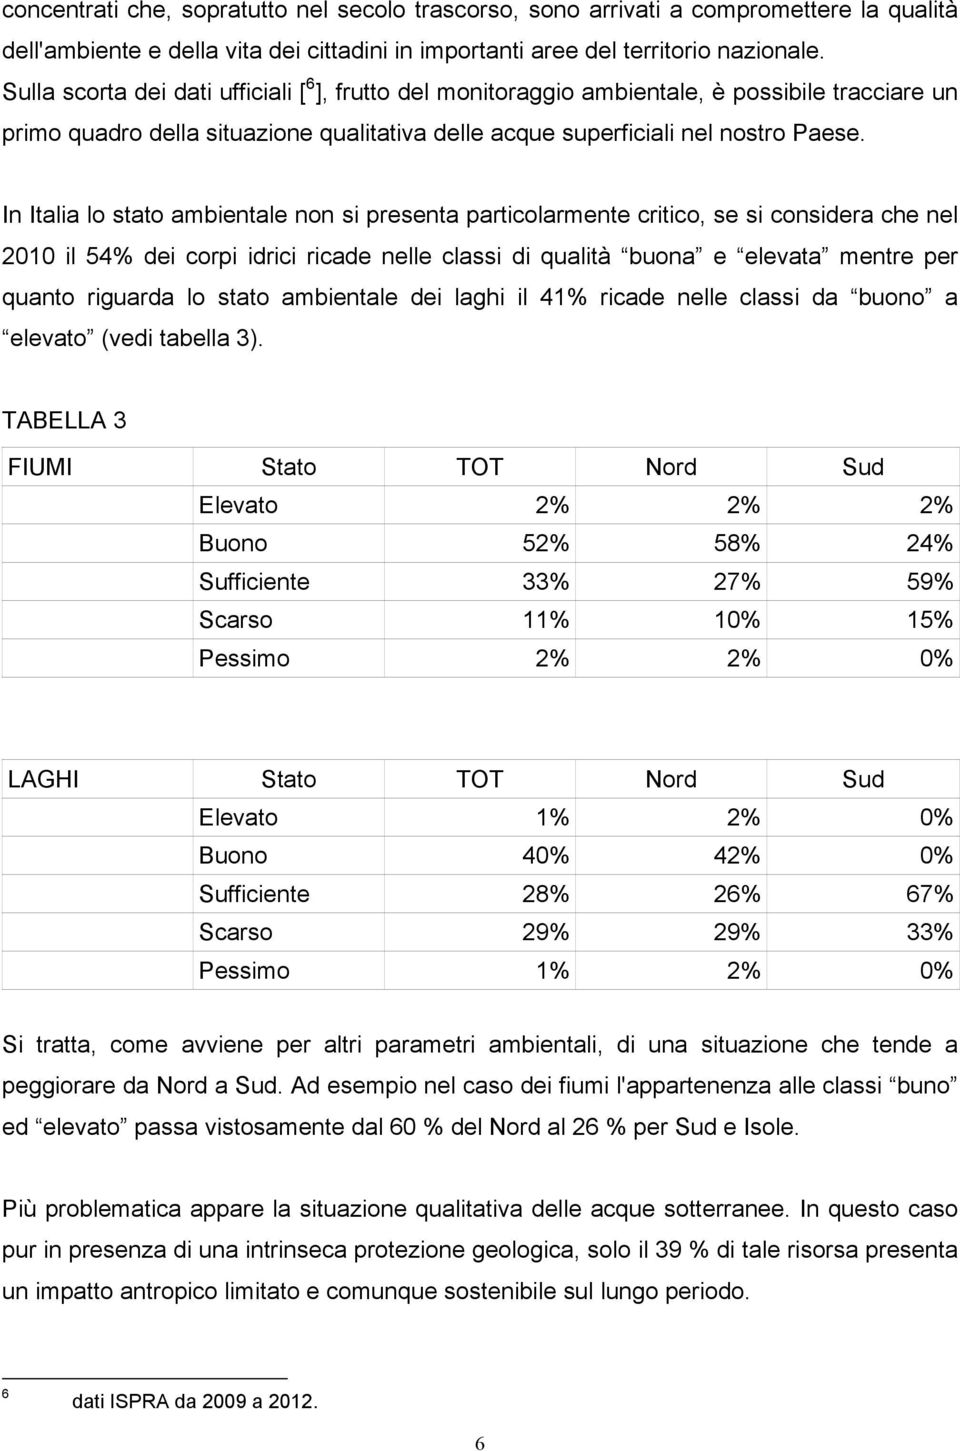 In Italia lo stato ambientale non si presenta particolarmente critico, se si considera che nel 2010 il 54% dei corpi idrici ricade nelle classi di qualità buona e elevata mentre per quanto riguarda